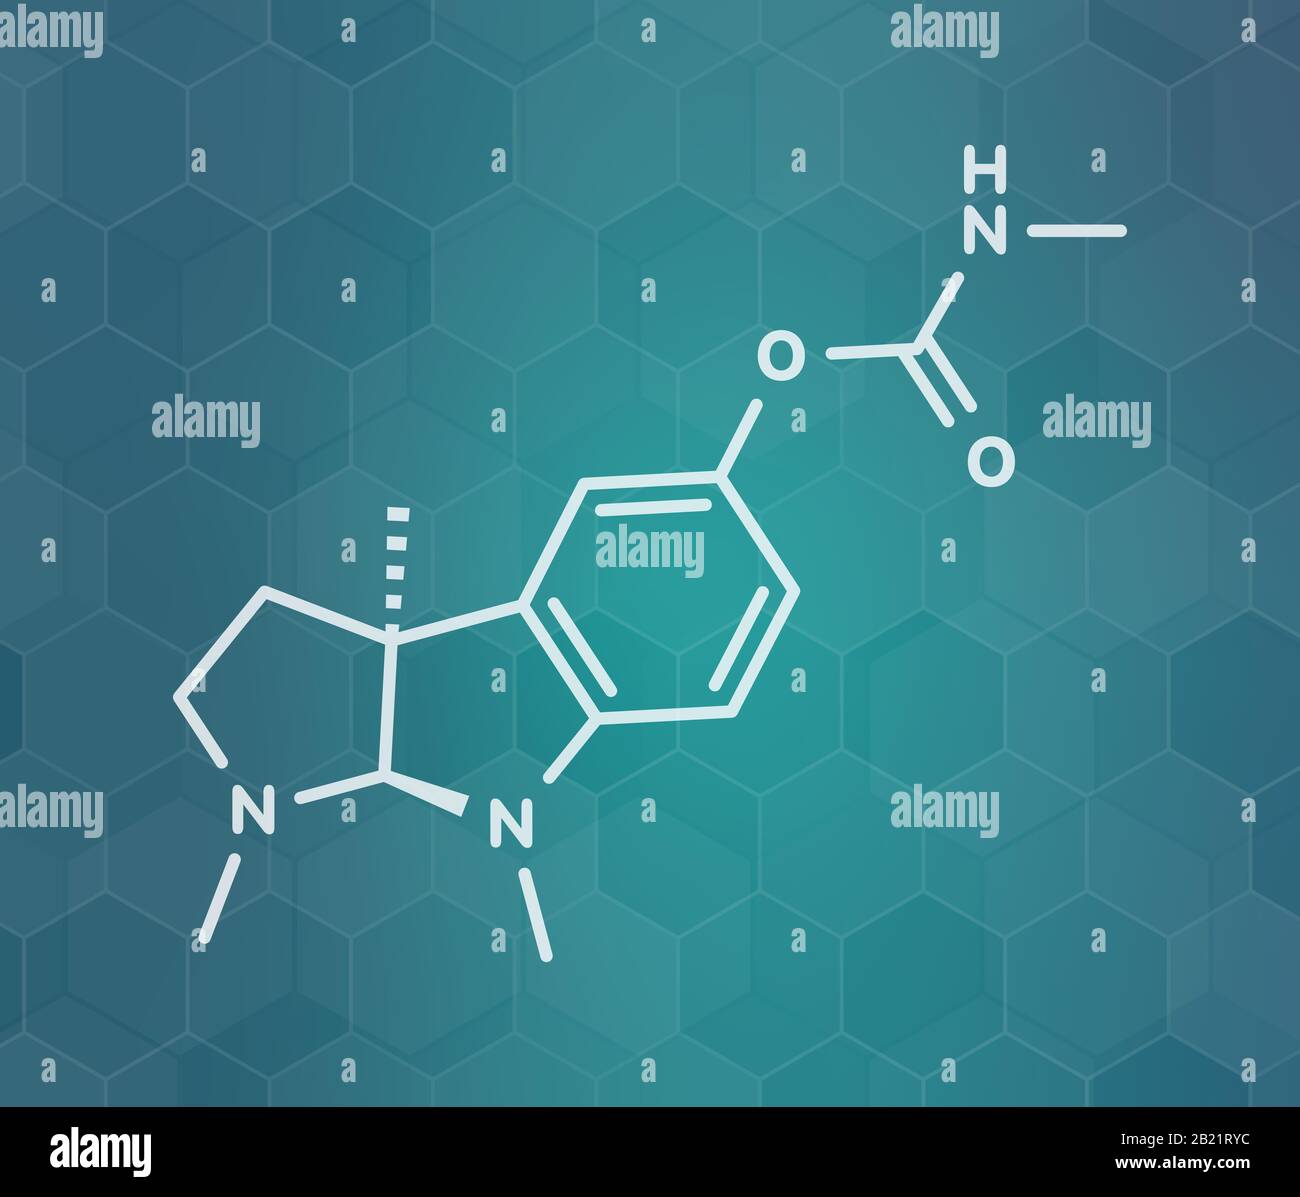 Physostigmine alkaloid molecule, illustration Stock Photo